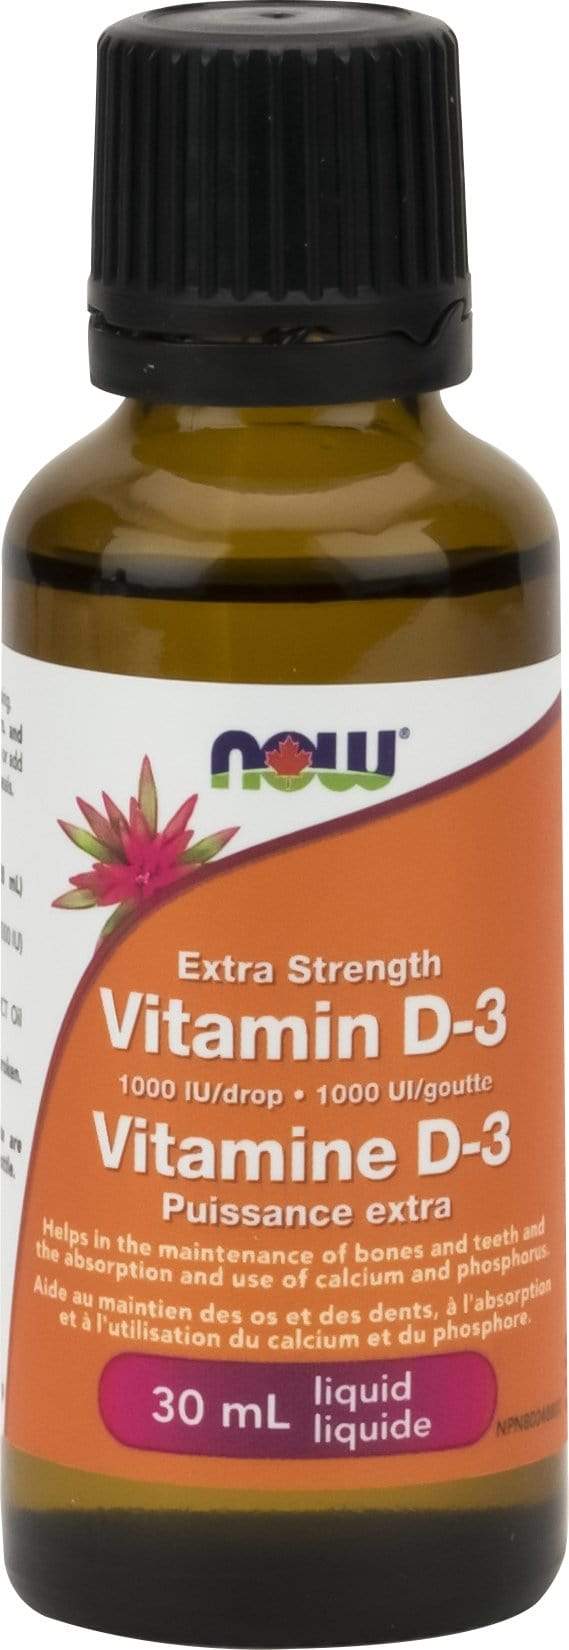 NOW Extra Strength Vitamin D-3 1000 IU/Drop 30 ml